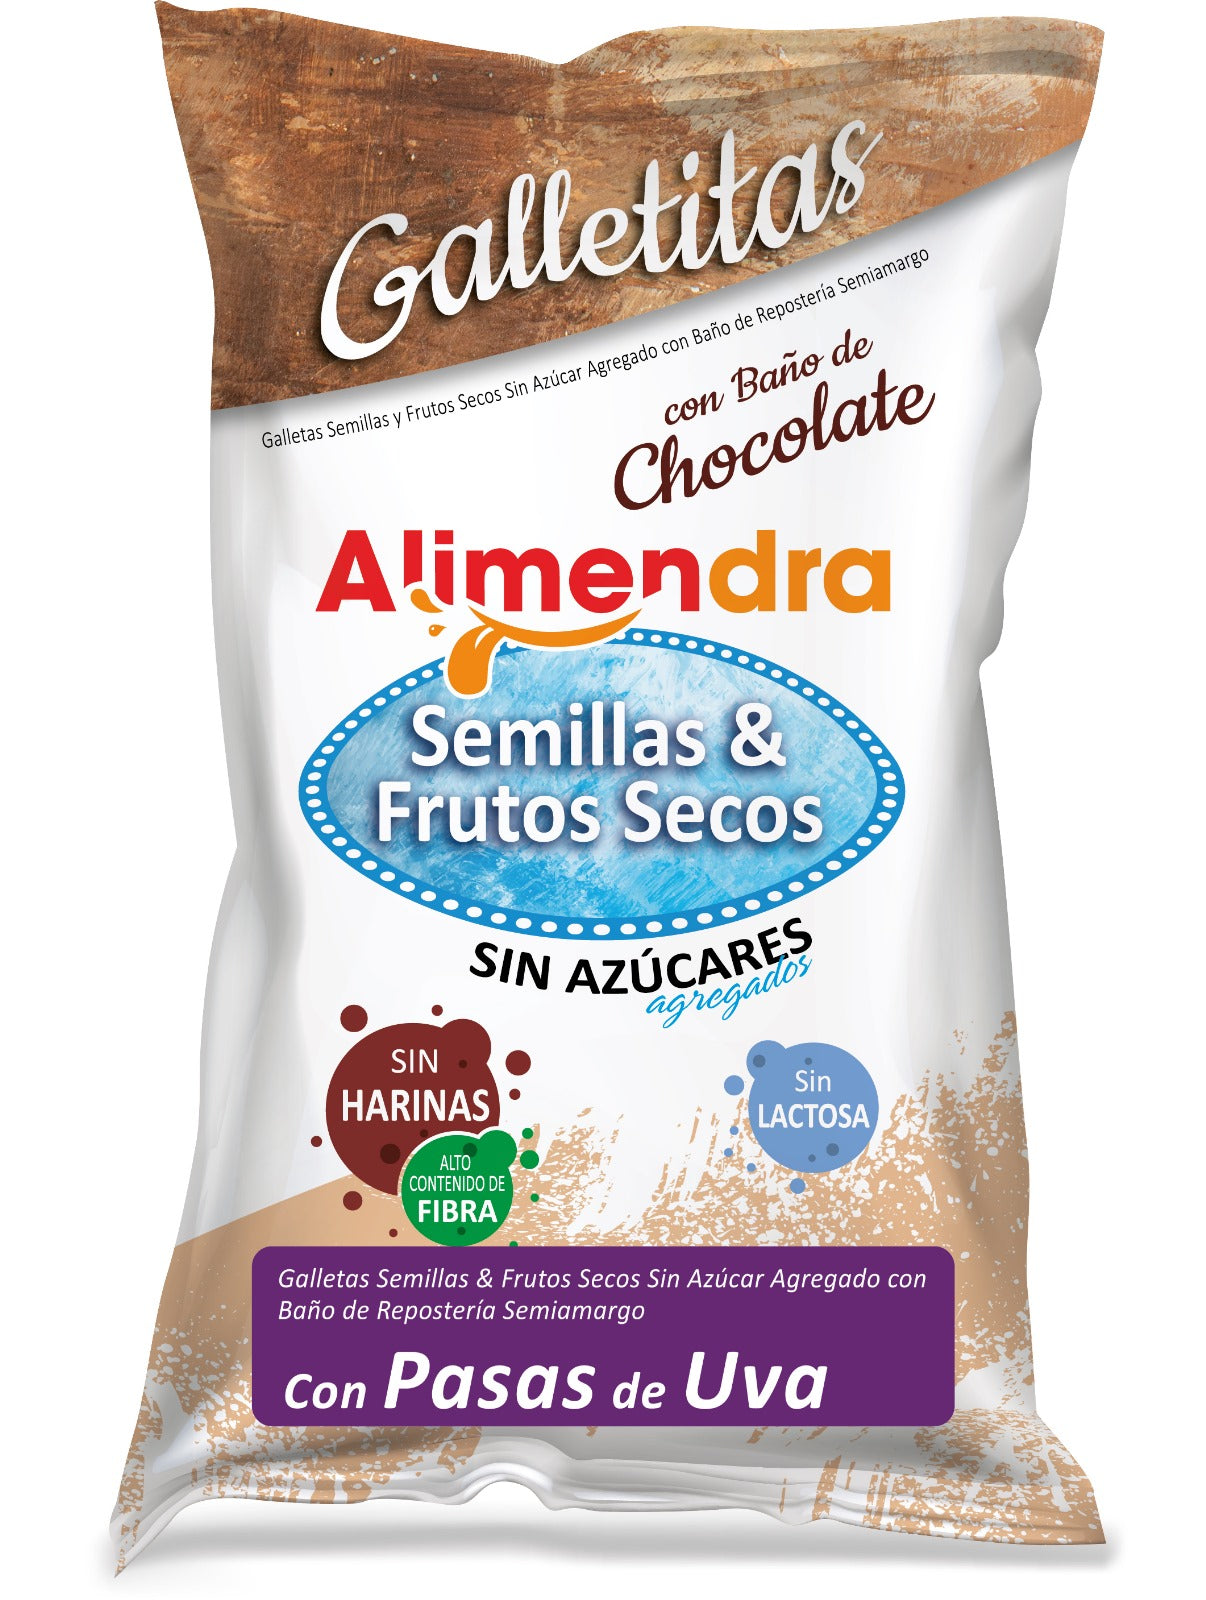 Galletitas Sin Azúcar de Semillas & Frutos Secos con Pasas de Uva. Paq. 120 grs.